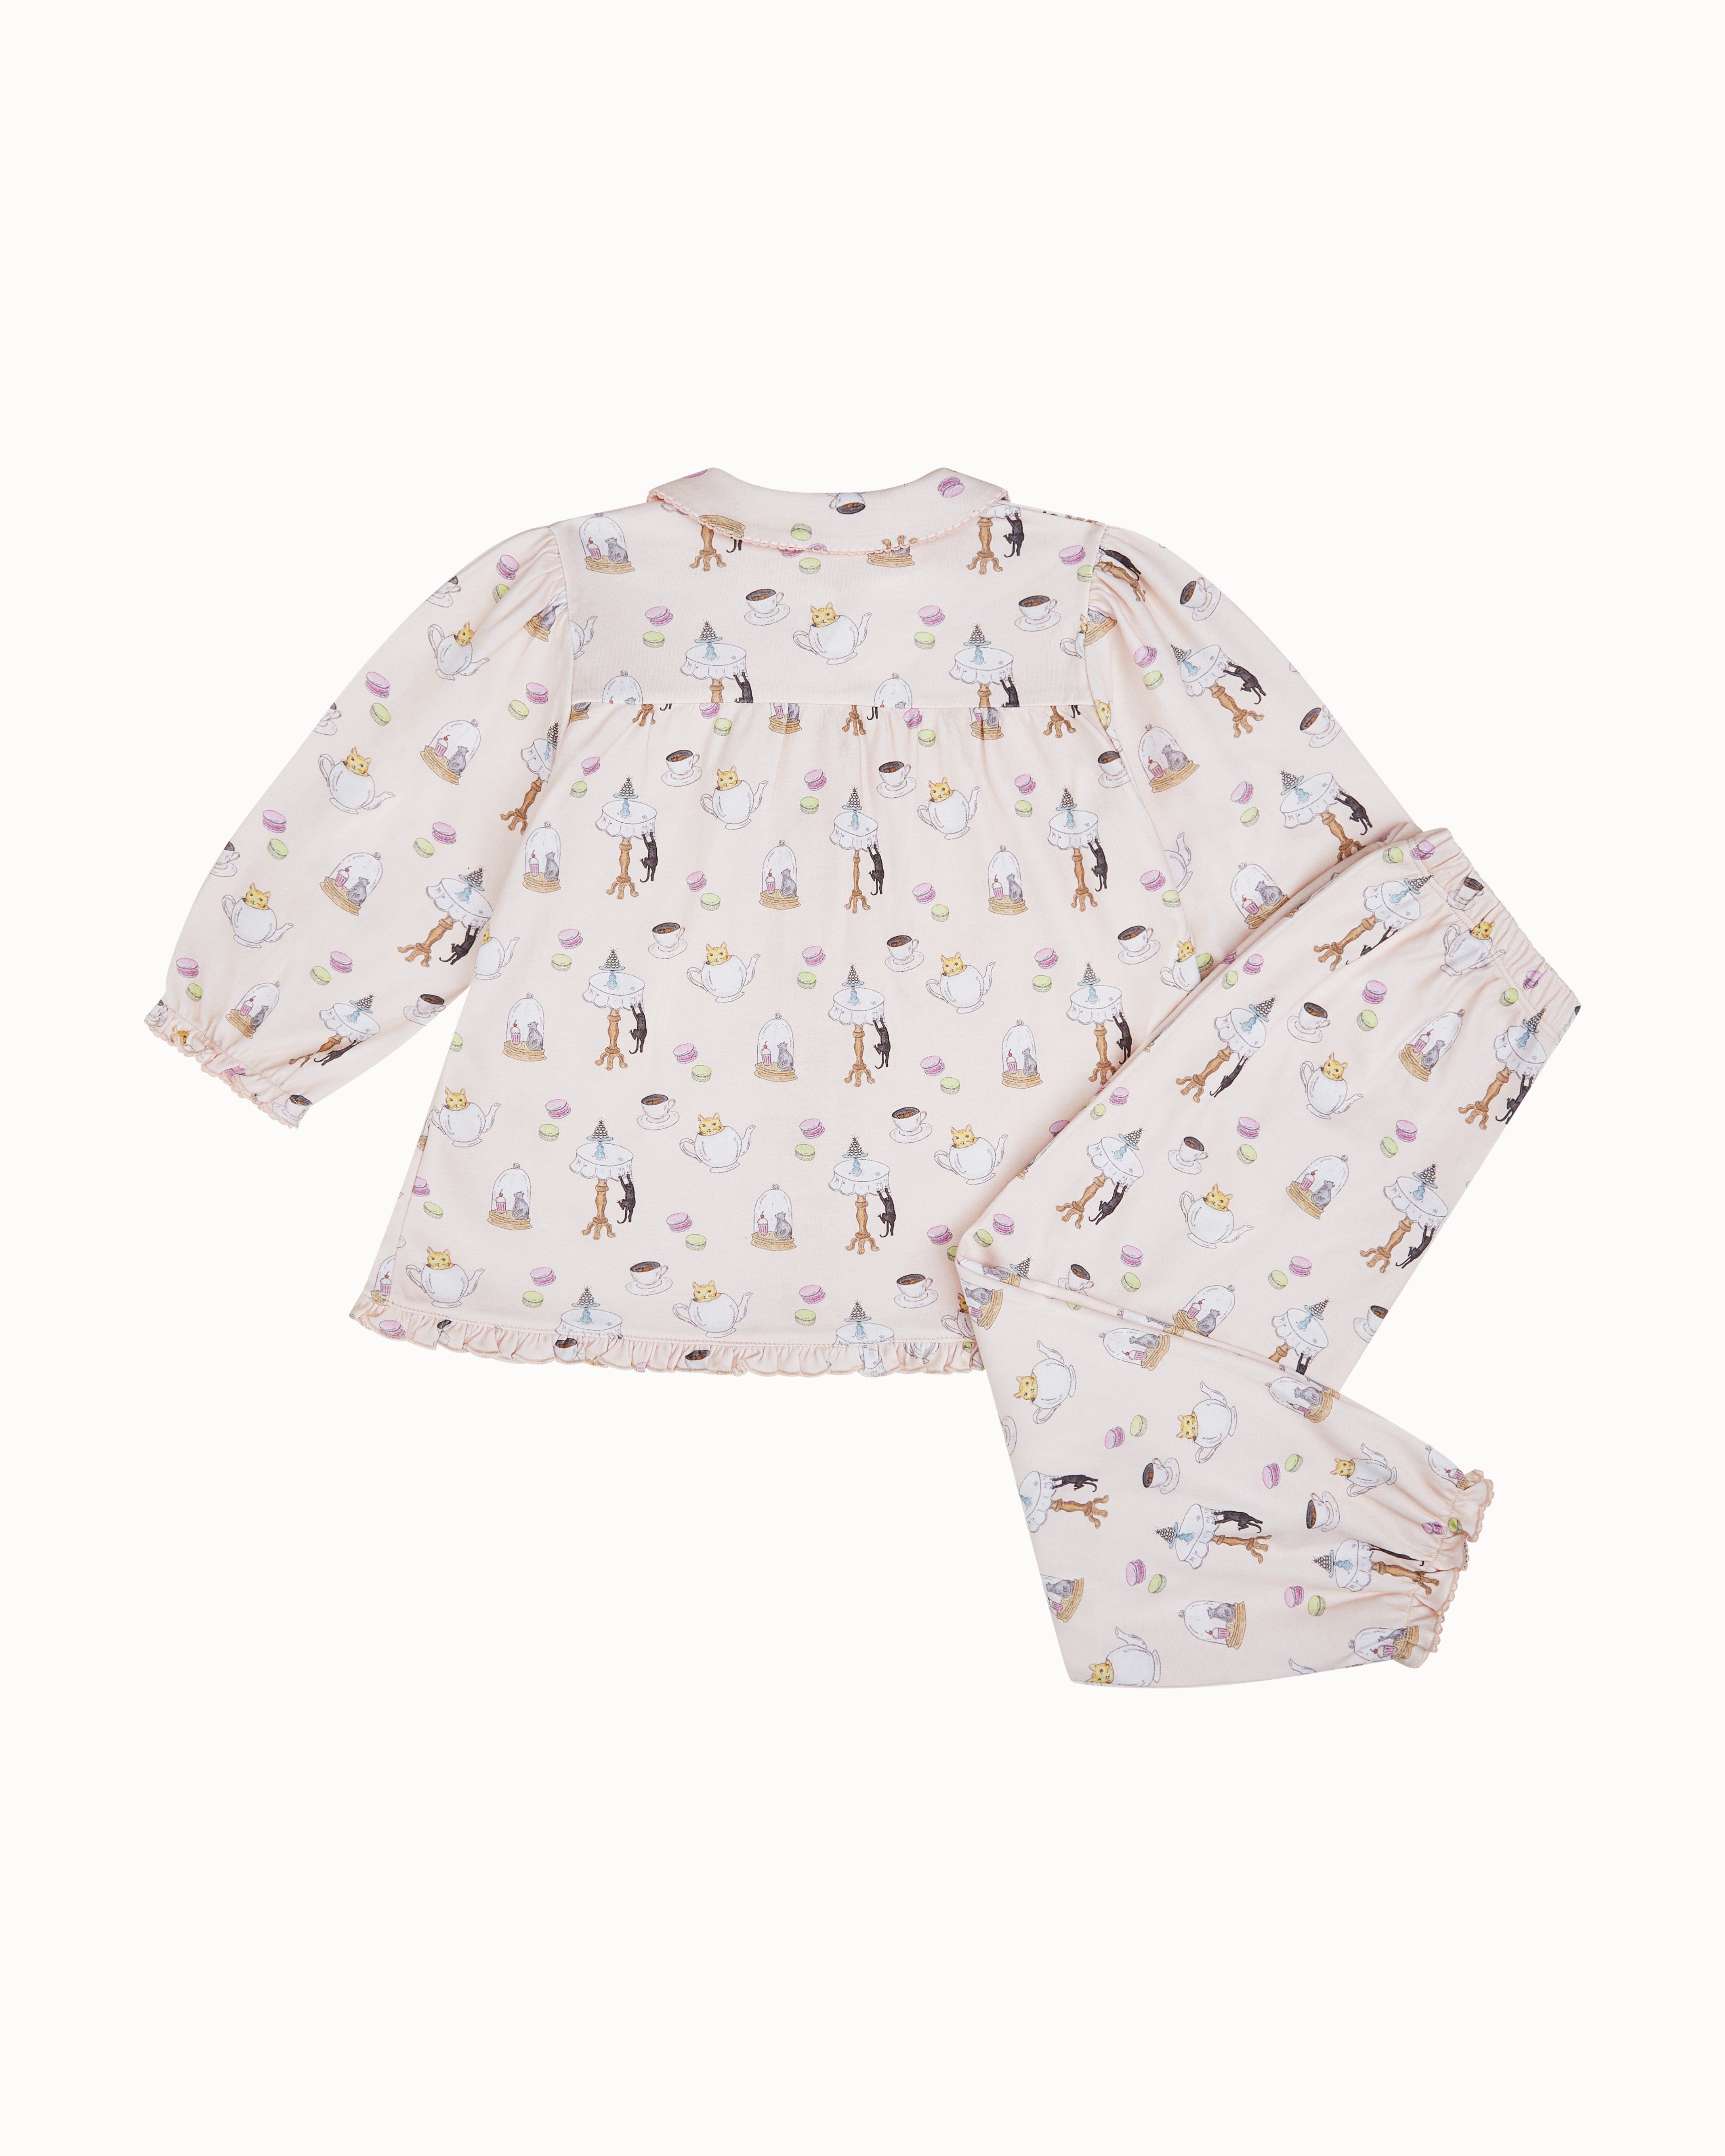 Kitten's Tea Party Pyjama - Child Pink